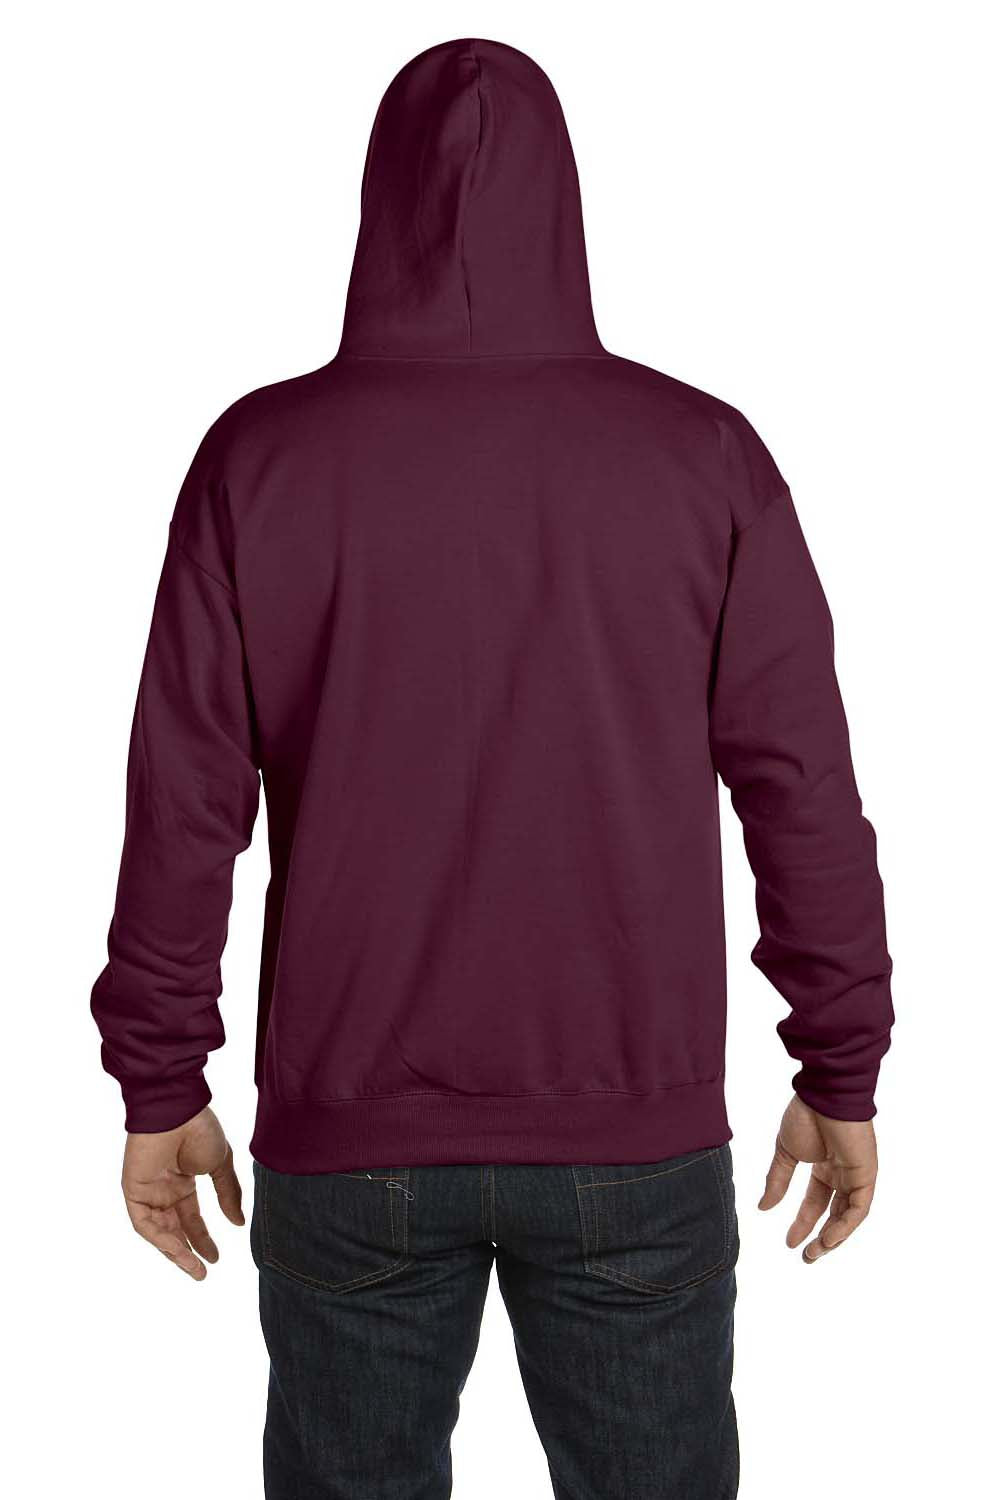 Hanes P180 Mens EcoSmart Print Pro XP Full Zip Hooded Sweatshirt Hoodie Maroon Back